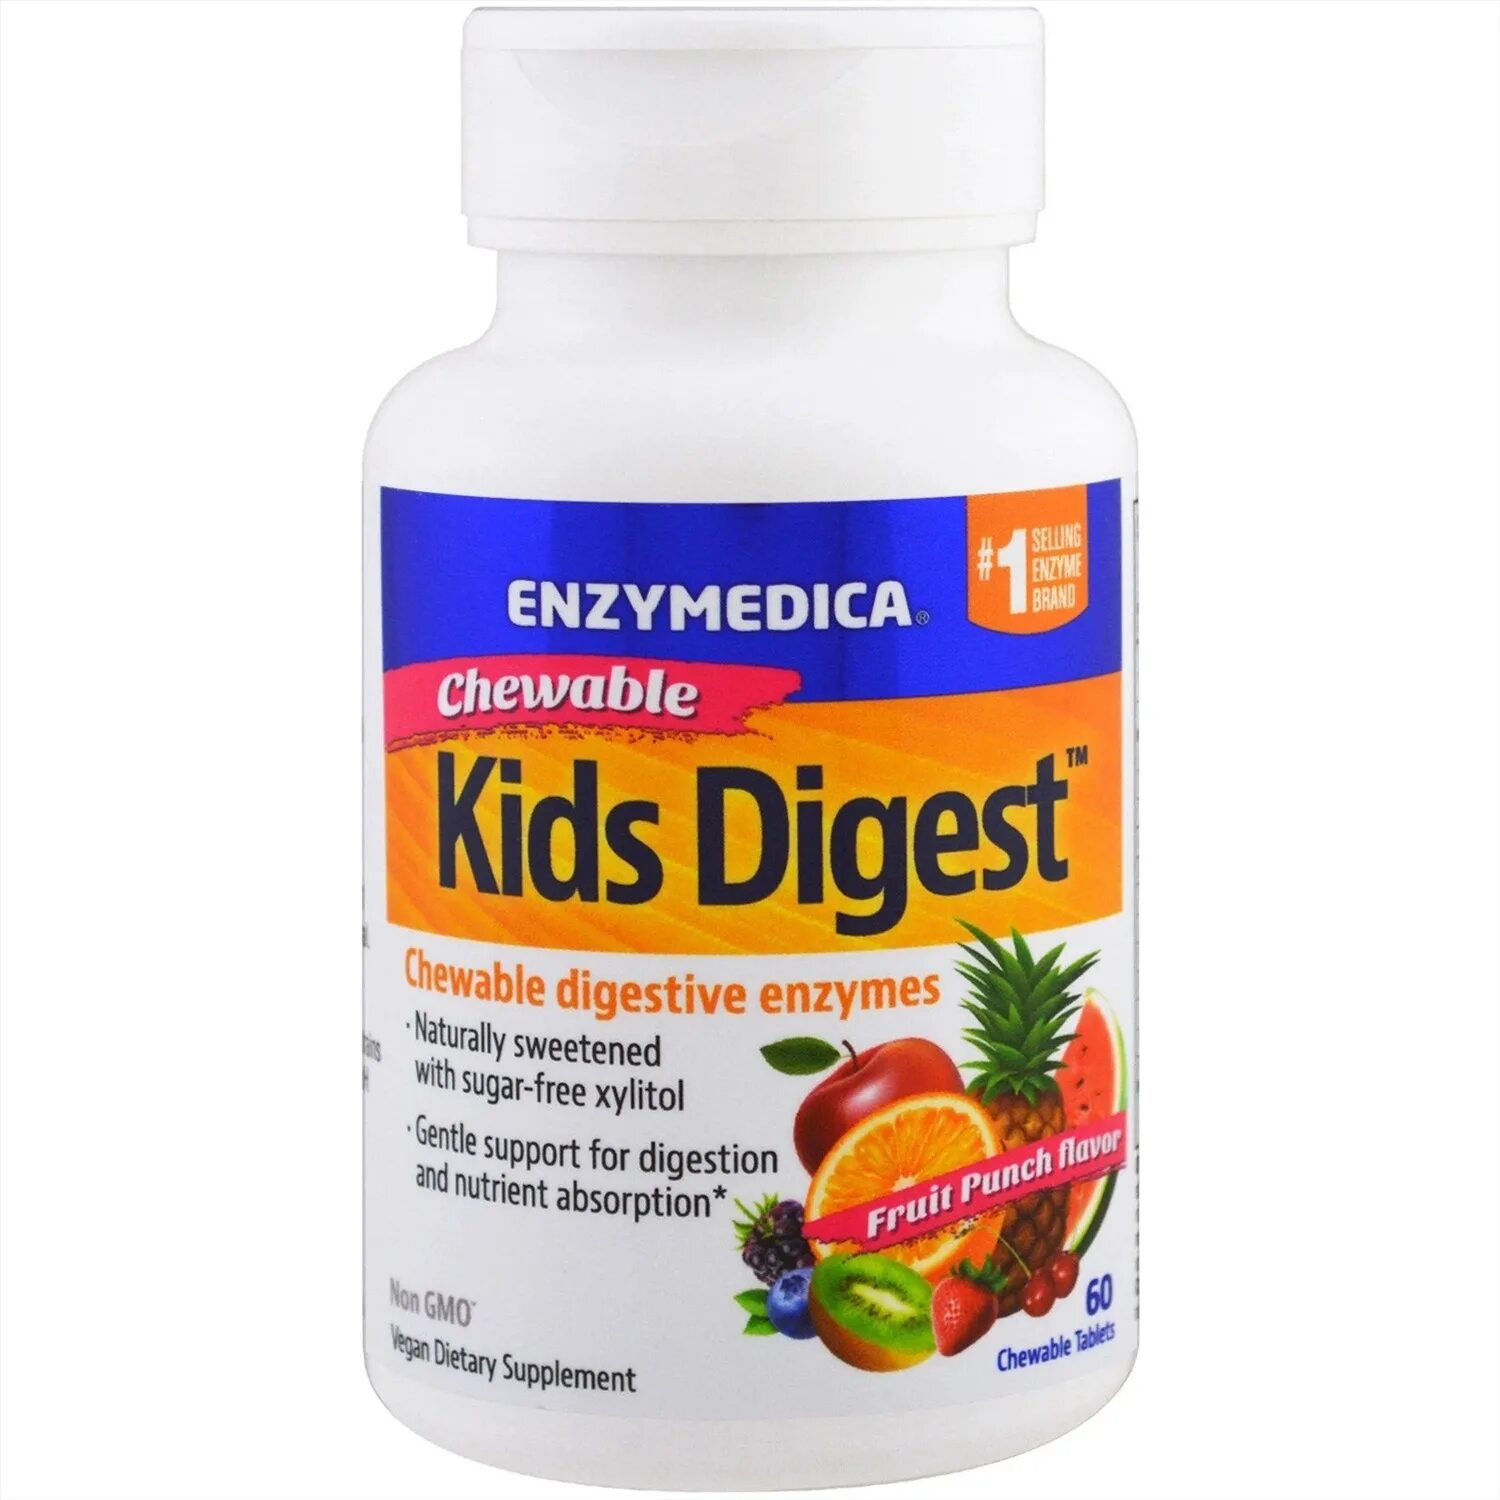 Энзимедика ферменты. Enzymedica, Kids Digest, Chewable Digestive Enzymes, Fruit p. Ферменты Enzymedica для детей. Ферменты для пищеварения детям Enzymedica.